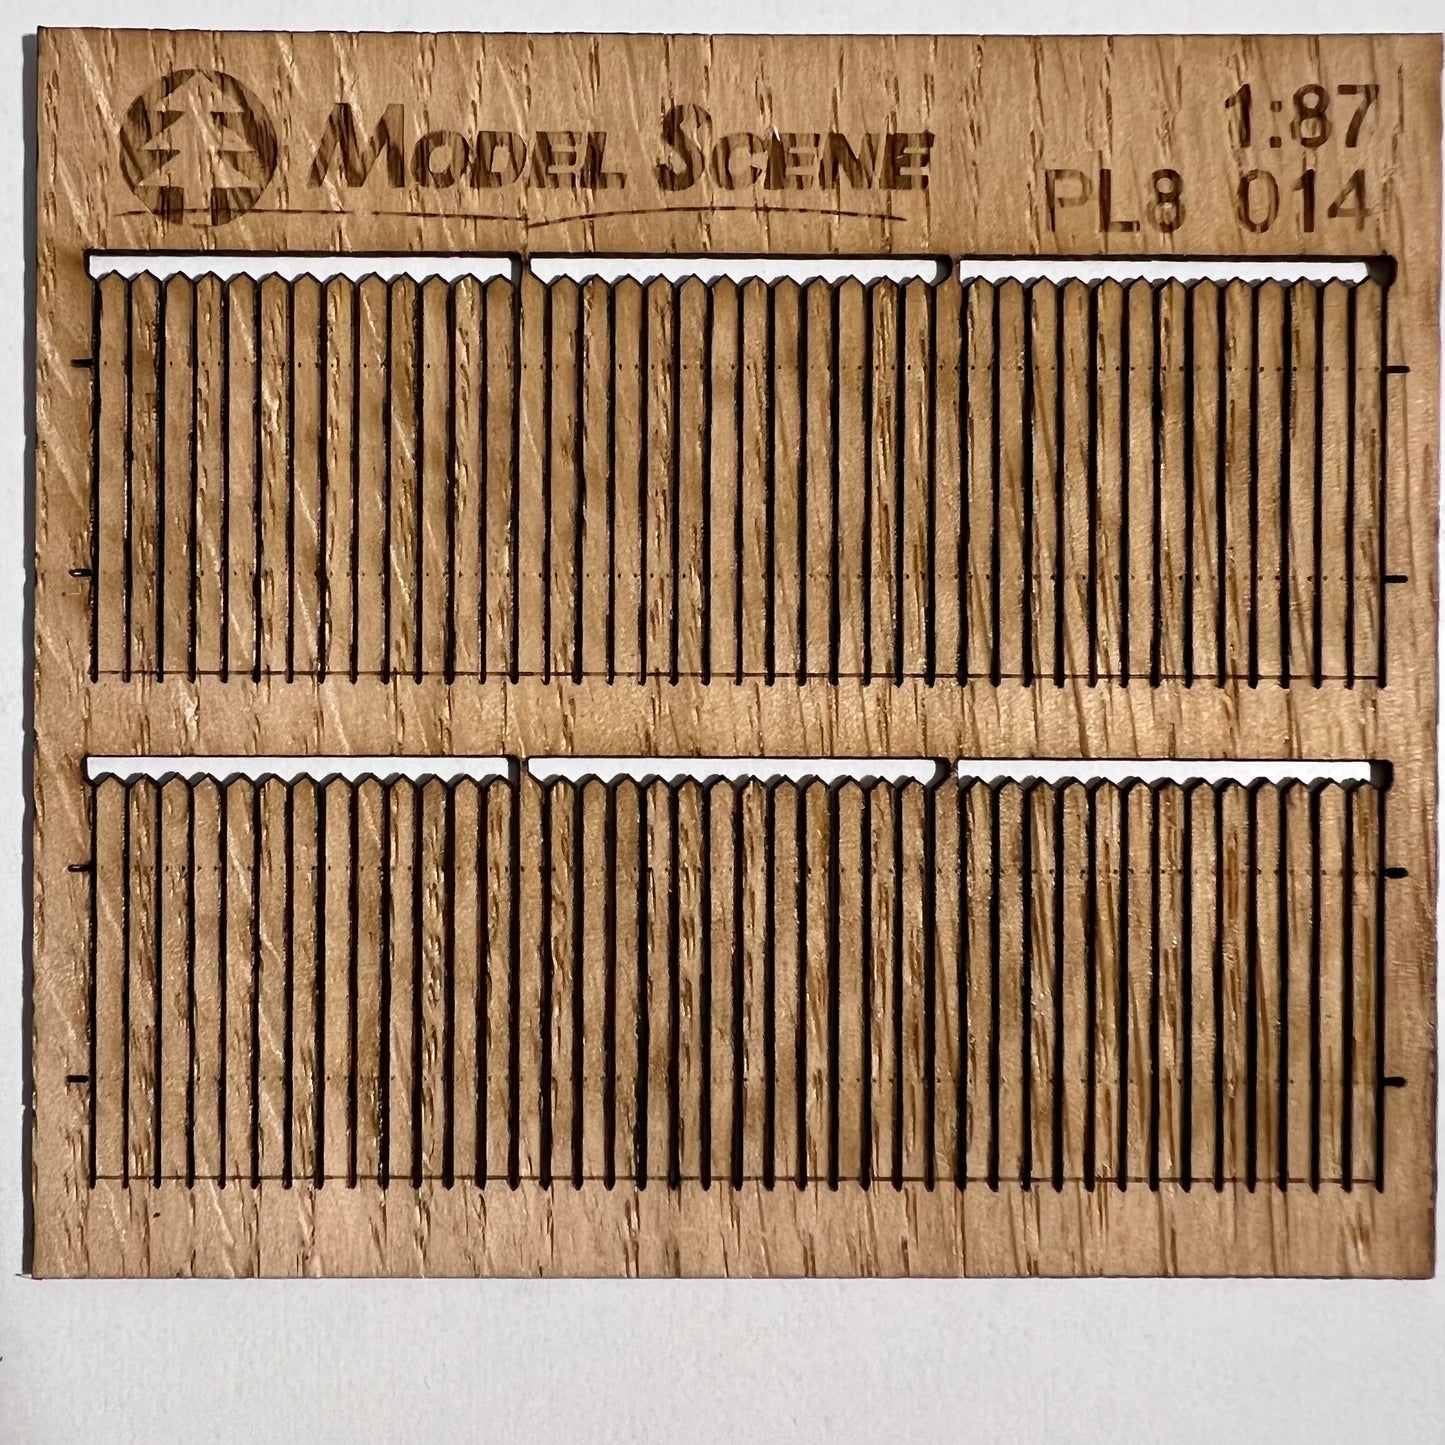 Bretterumzäunung spitzer Rand, breite Bretter, 1:87 - Langmesser-Modellwelt - Model-Scene